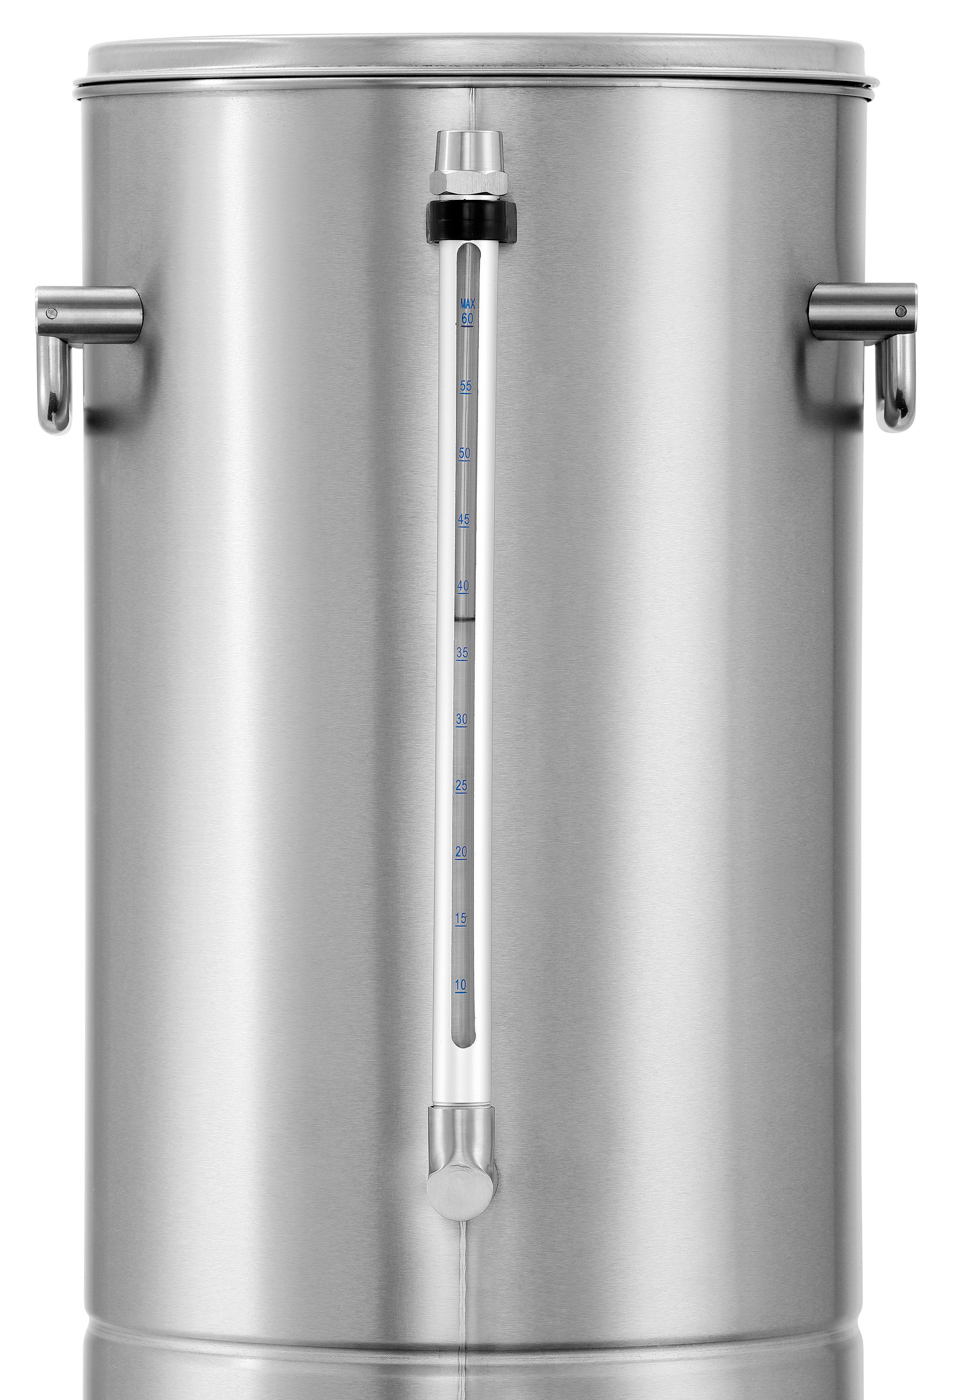 Bartscher Heißwasser-Spender 9L | Inhalt: 9 Liter | Maße: 30,5 x 35 x 490 cm. Gewicht: 4,4 kg